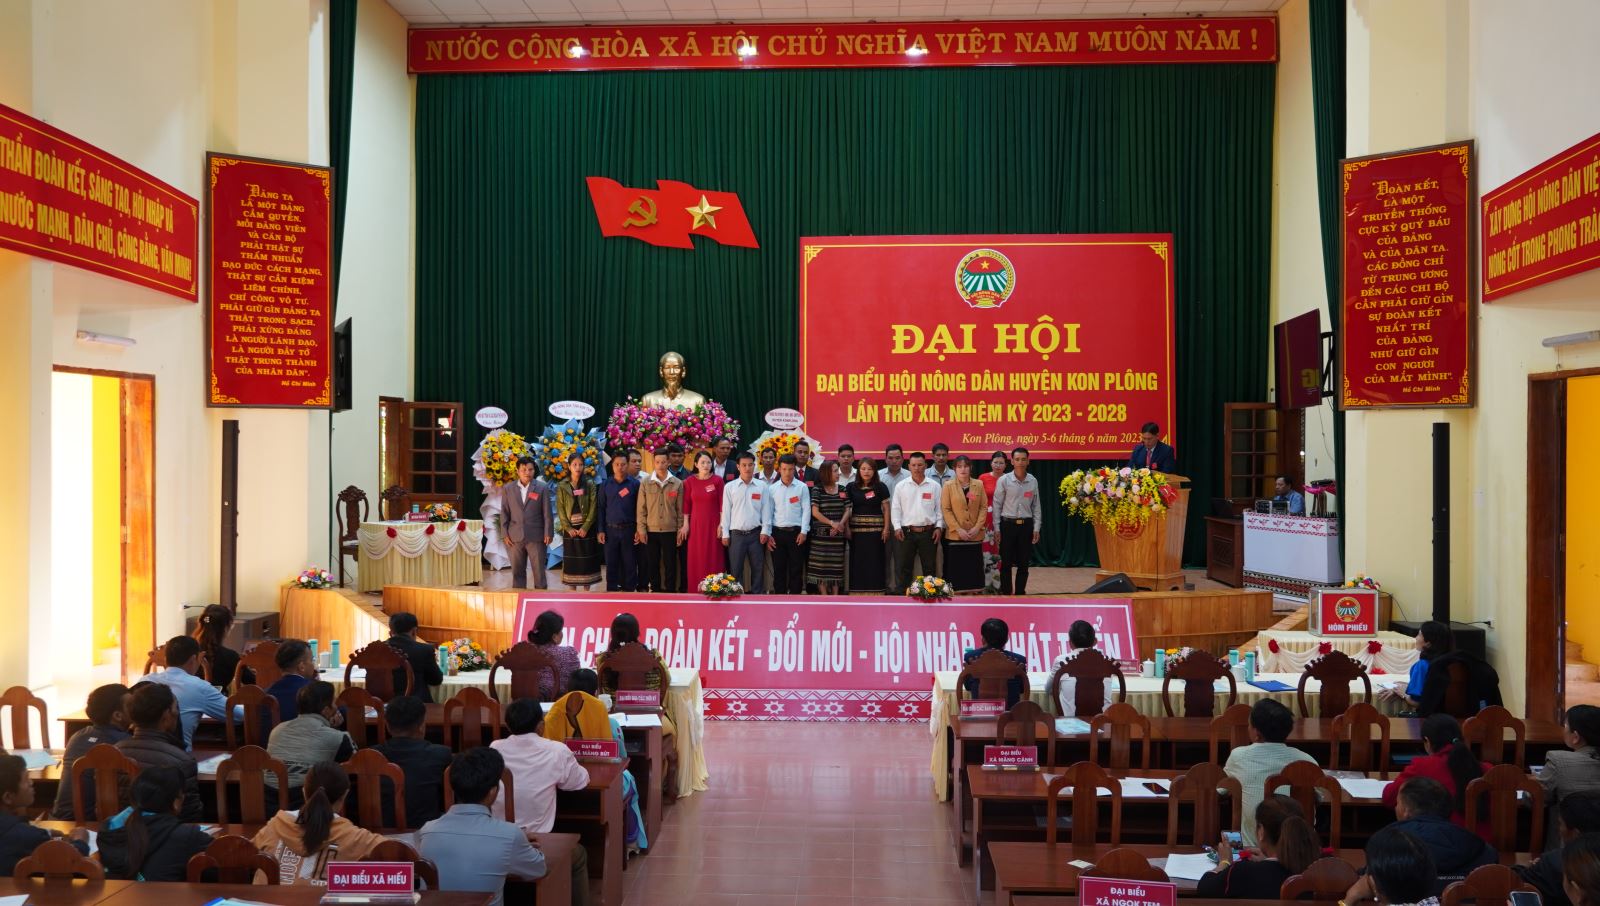 Đại hội Đại biểu Hội Nông dân huyện Kon Plông lần thứ XII, nhiệm kỳ 2023 – 2028